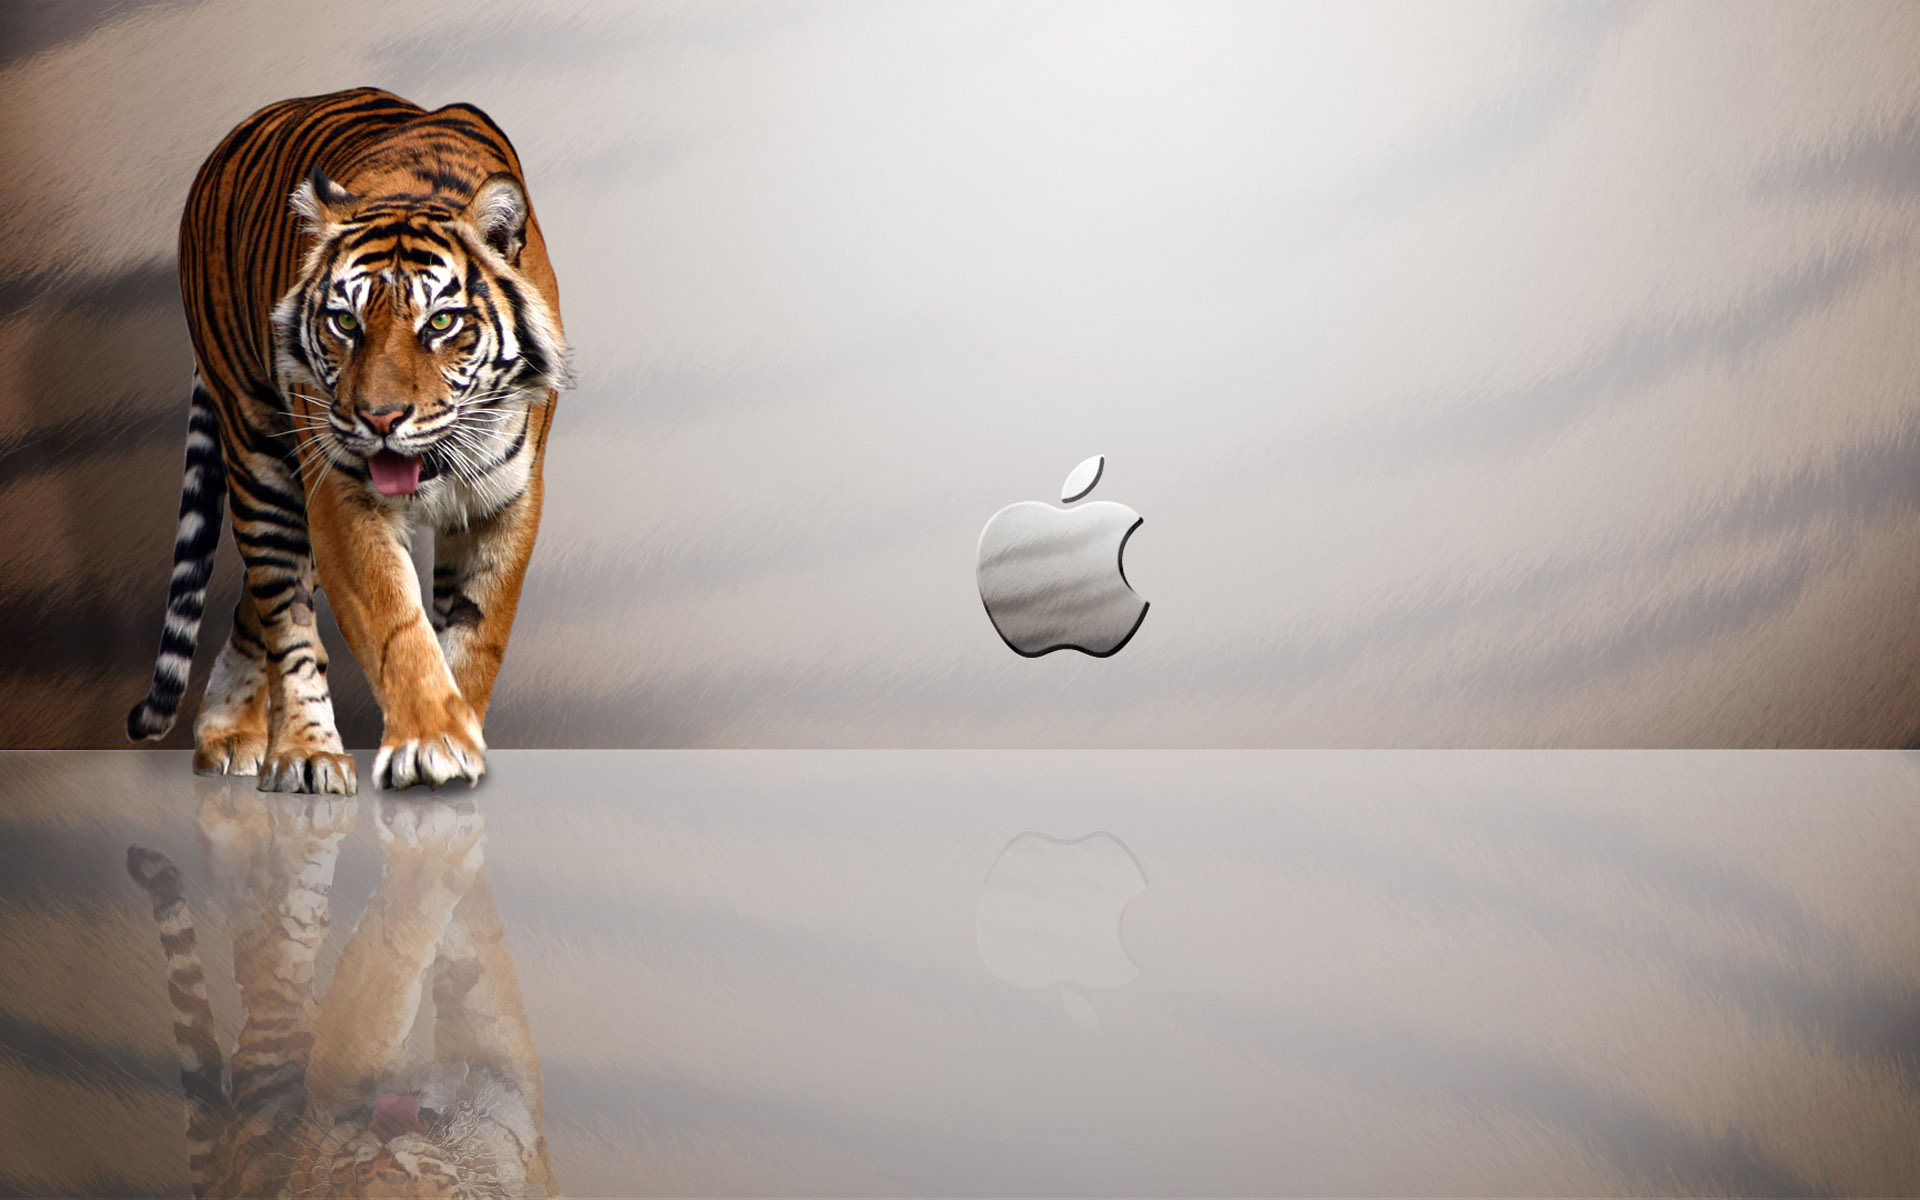 Mac, apple, leopard, background, wallpaper, gallery, desktop